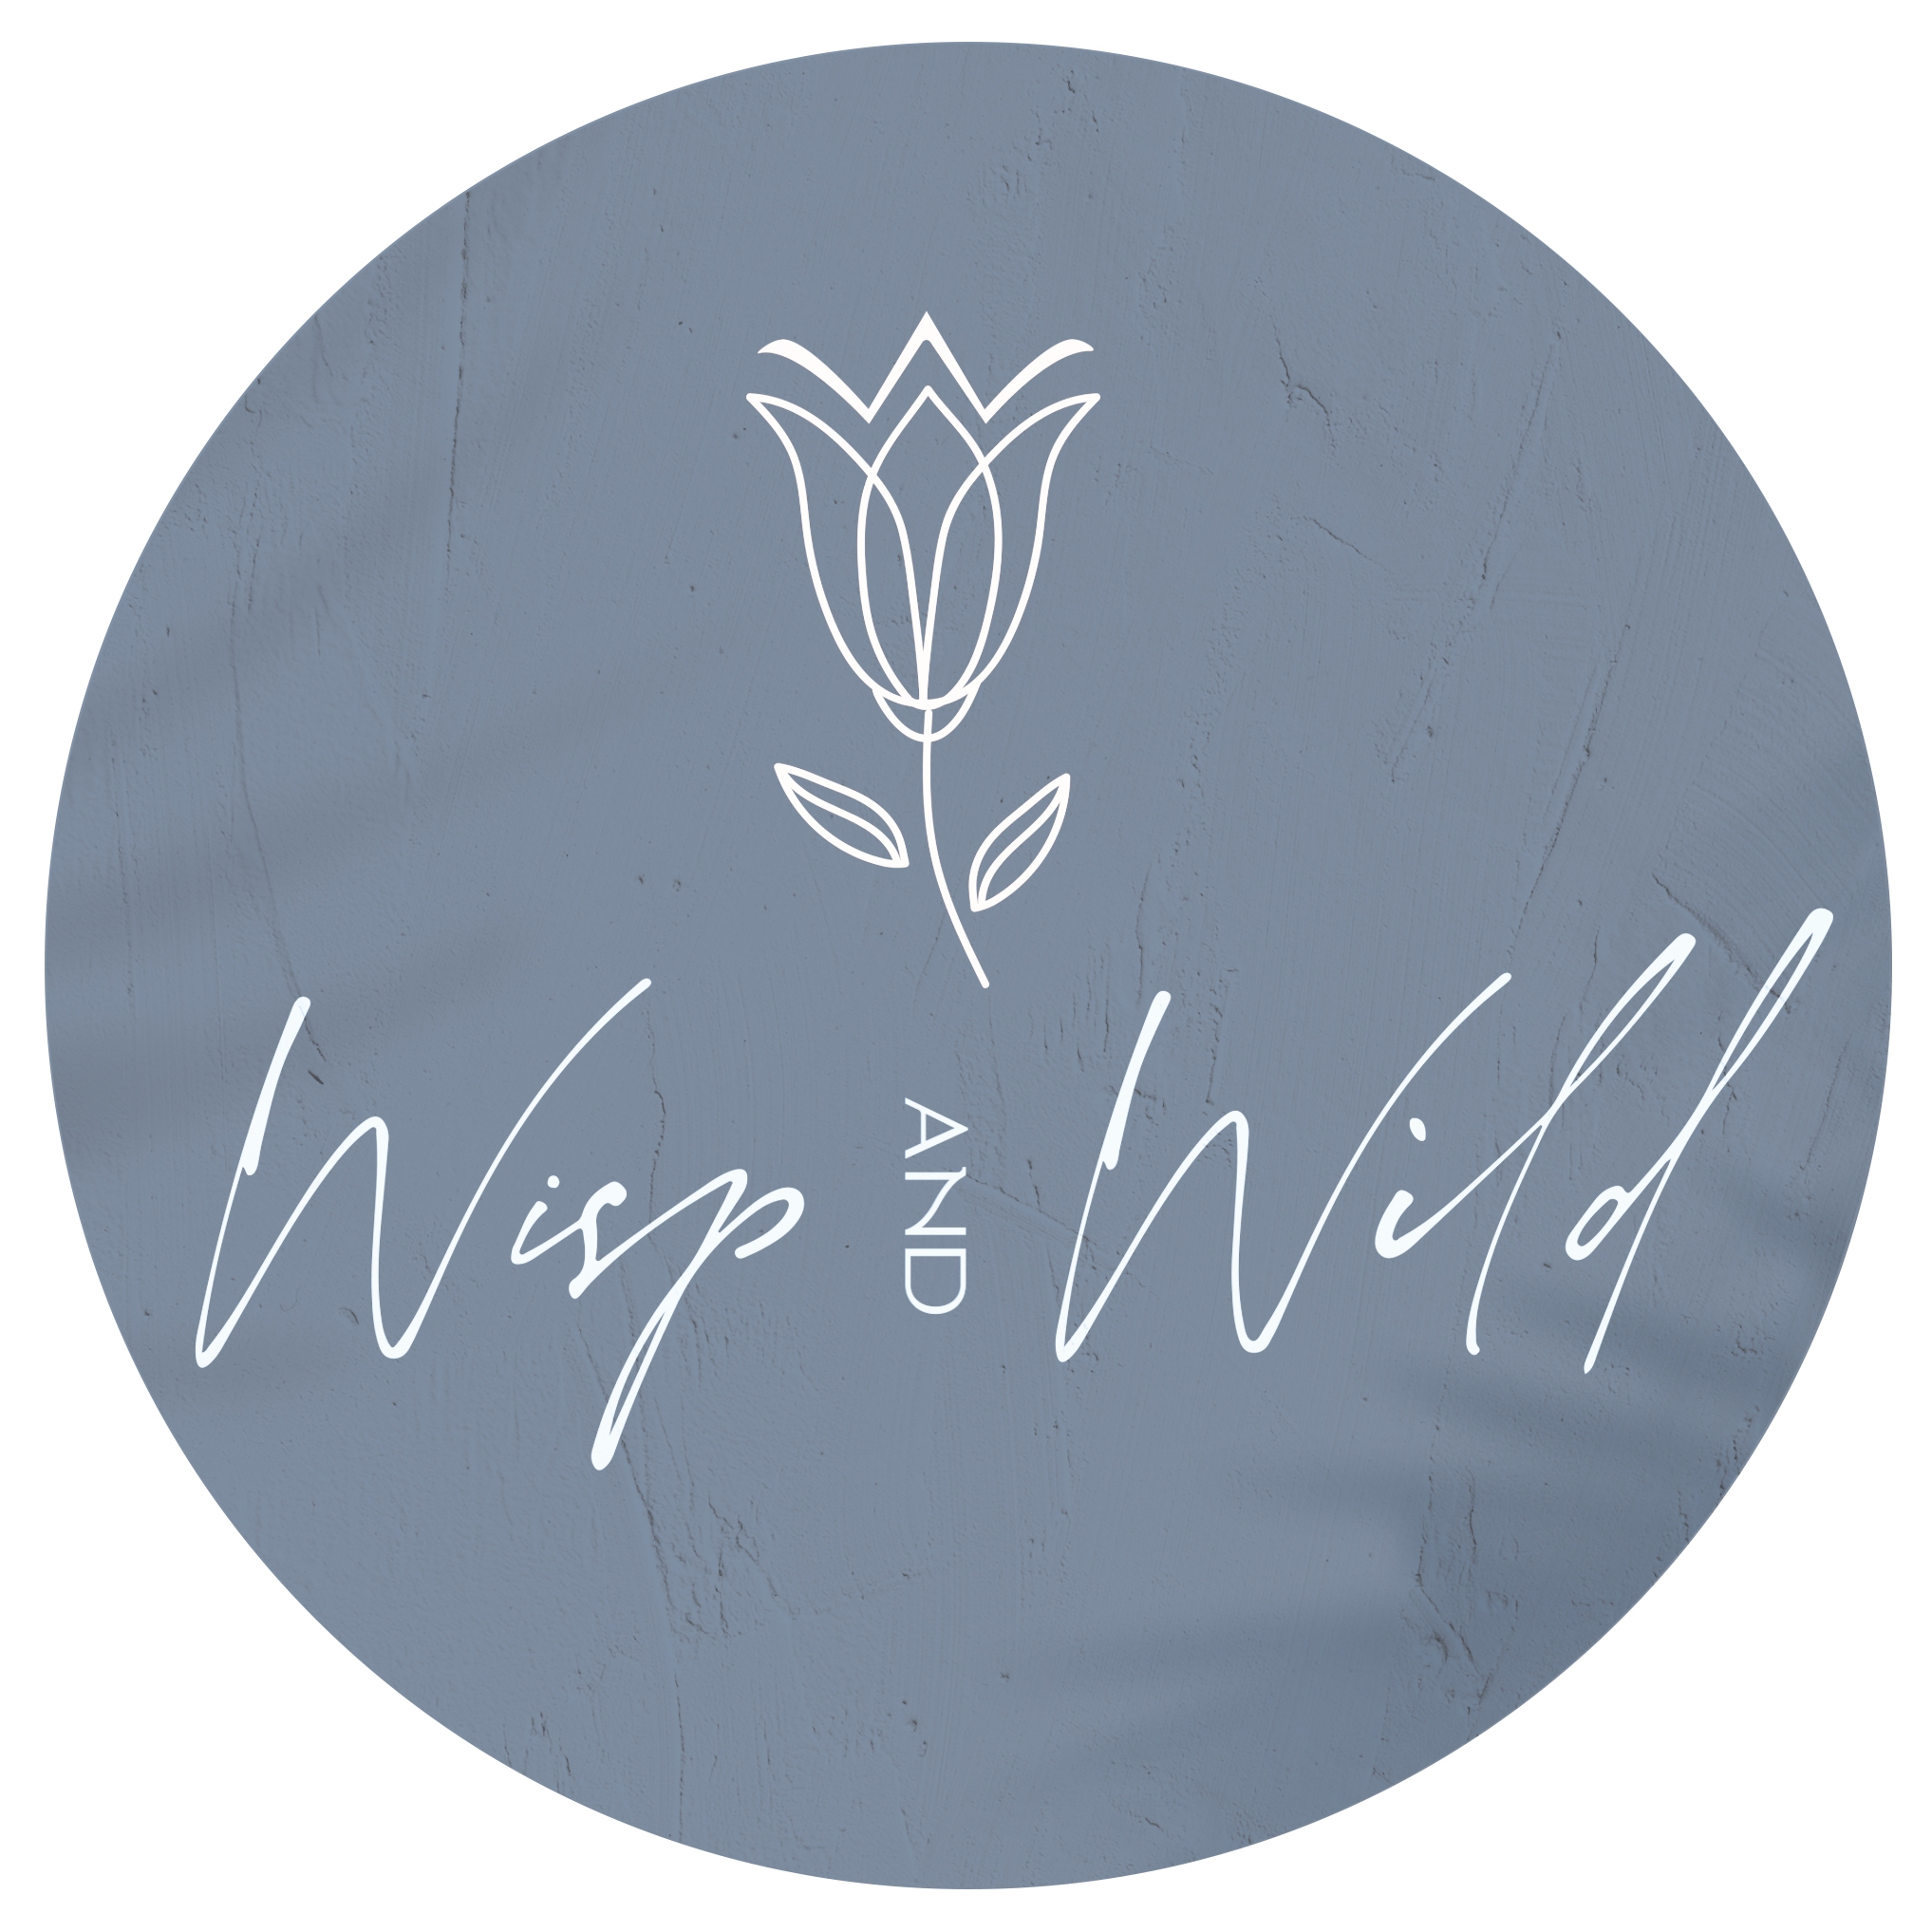 Wisp and Wild